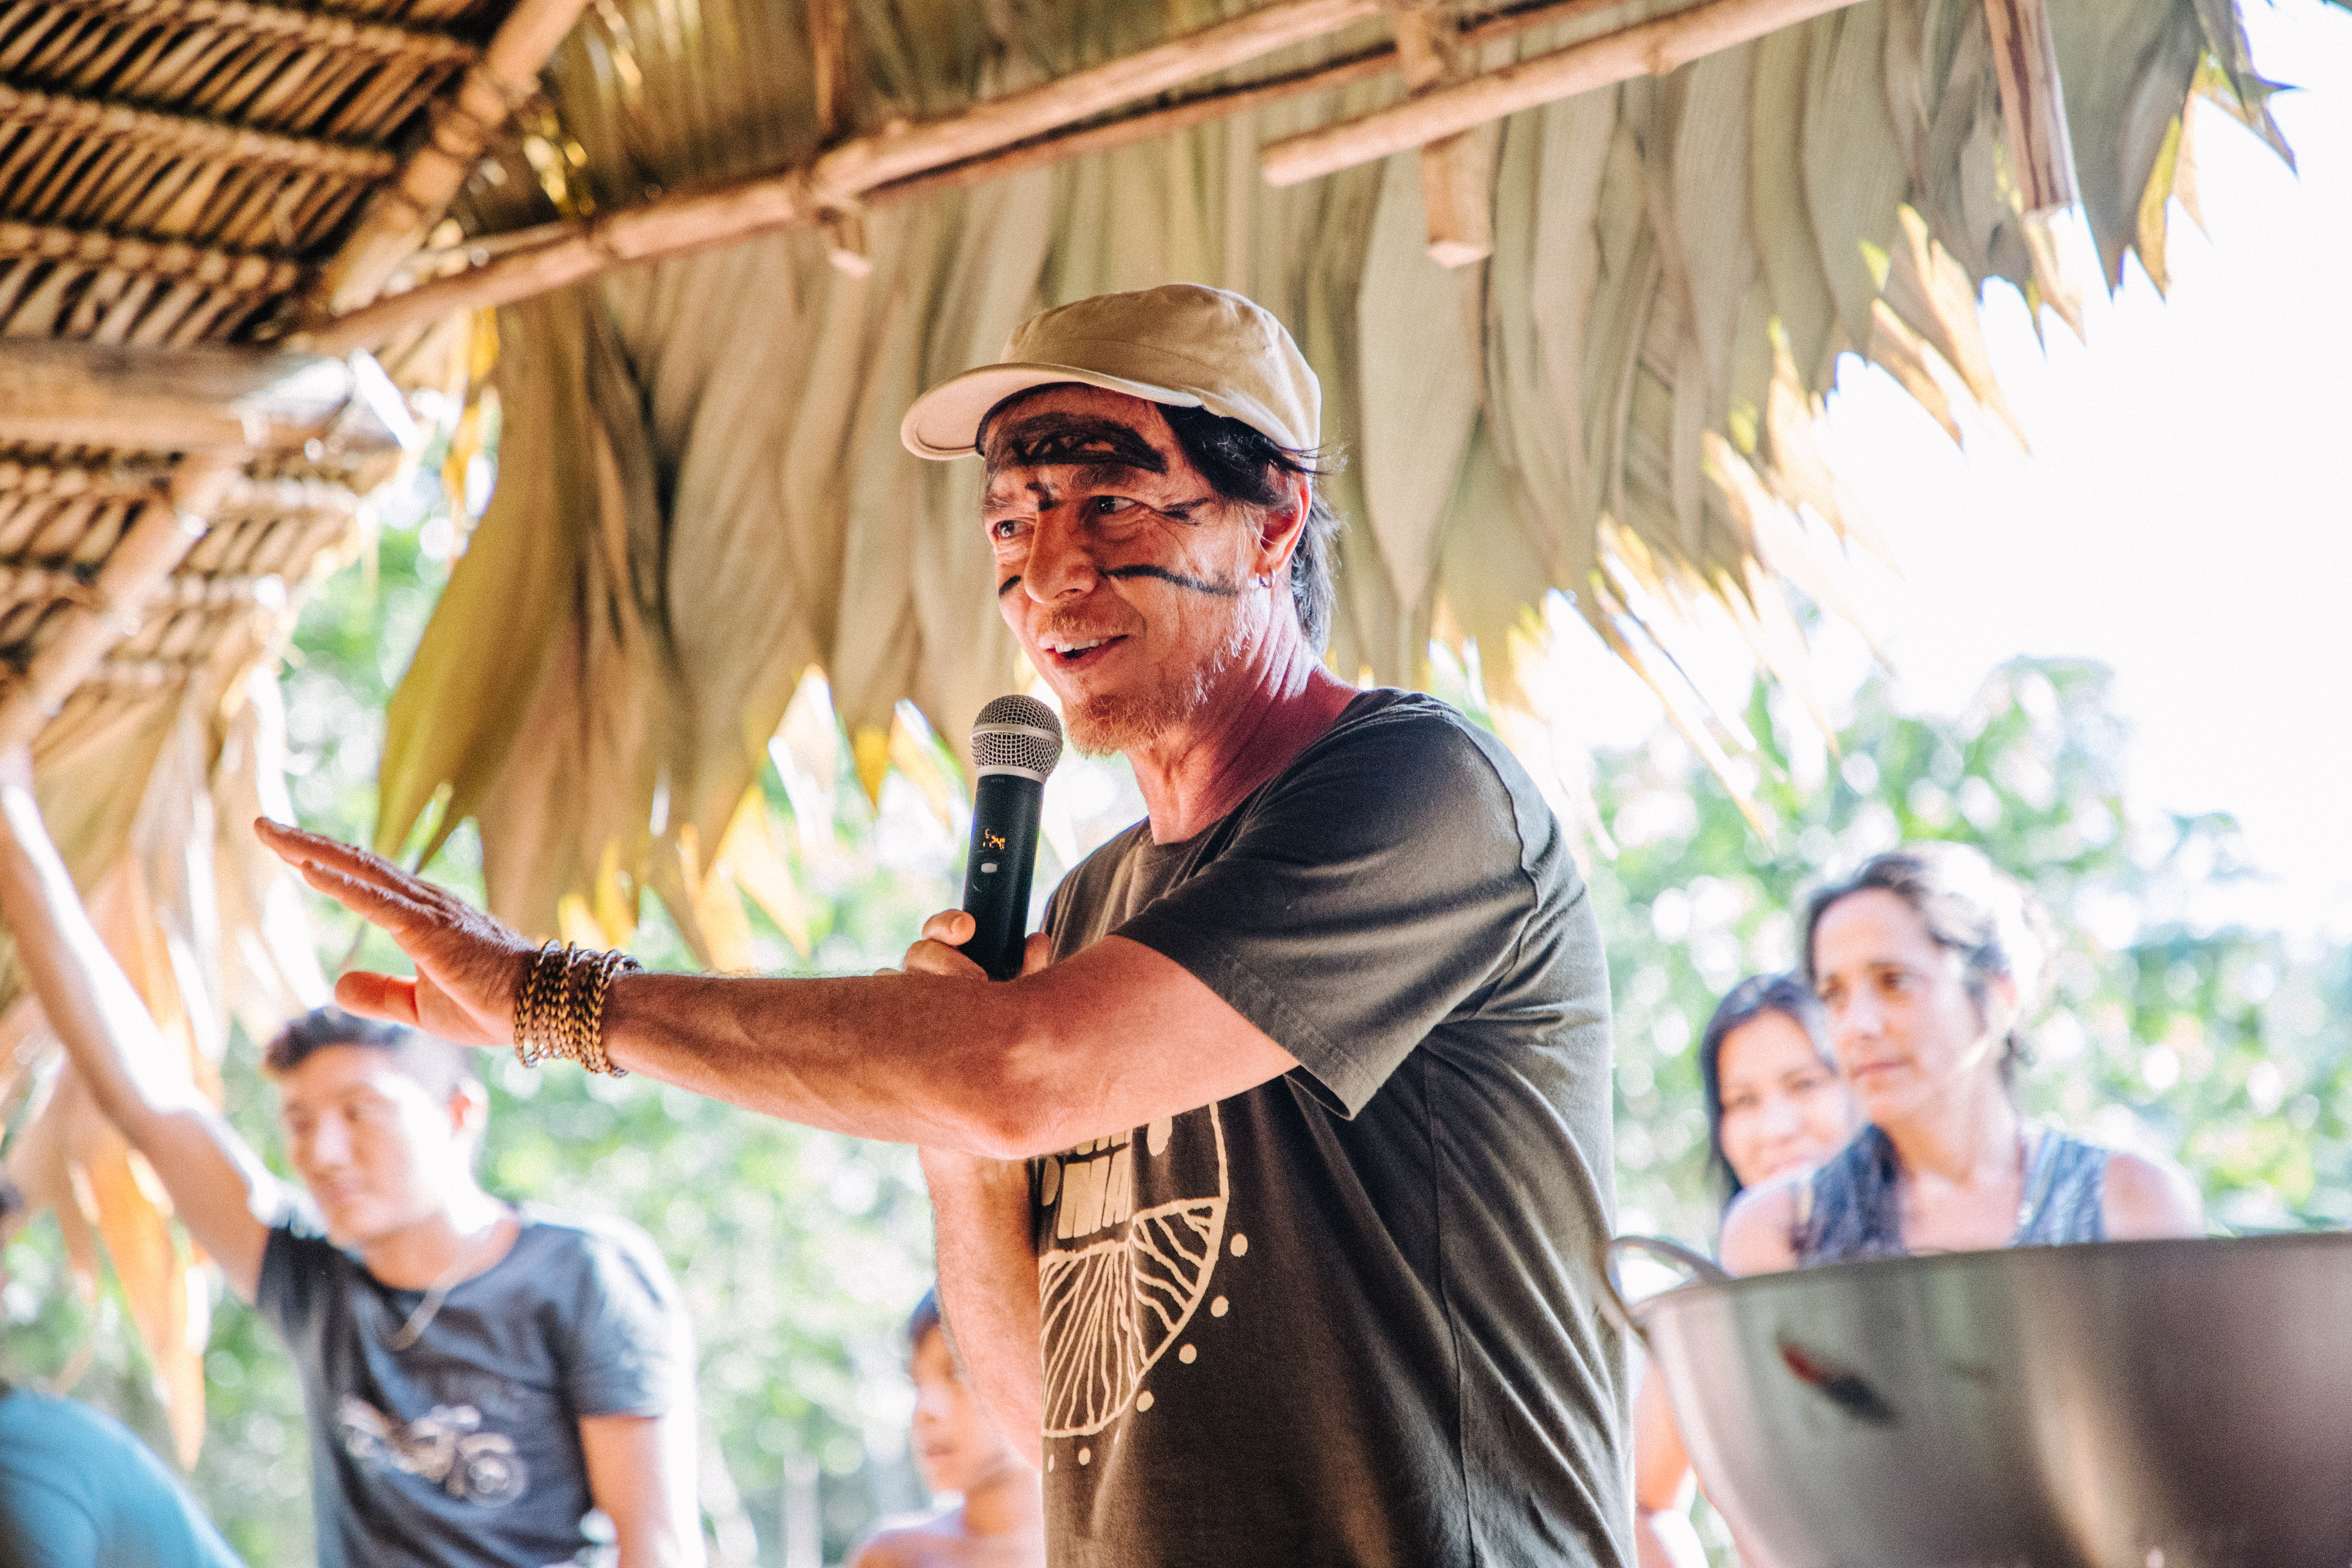 Marcos Wesley, coordenador do programa Rio Negro do ISA, fala durante as celebrações no Xihopi|Christian Braga/ISA